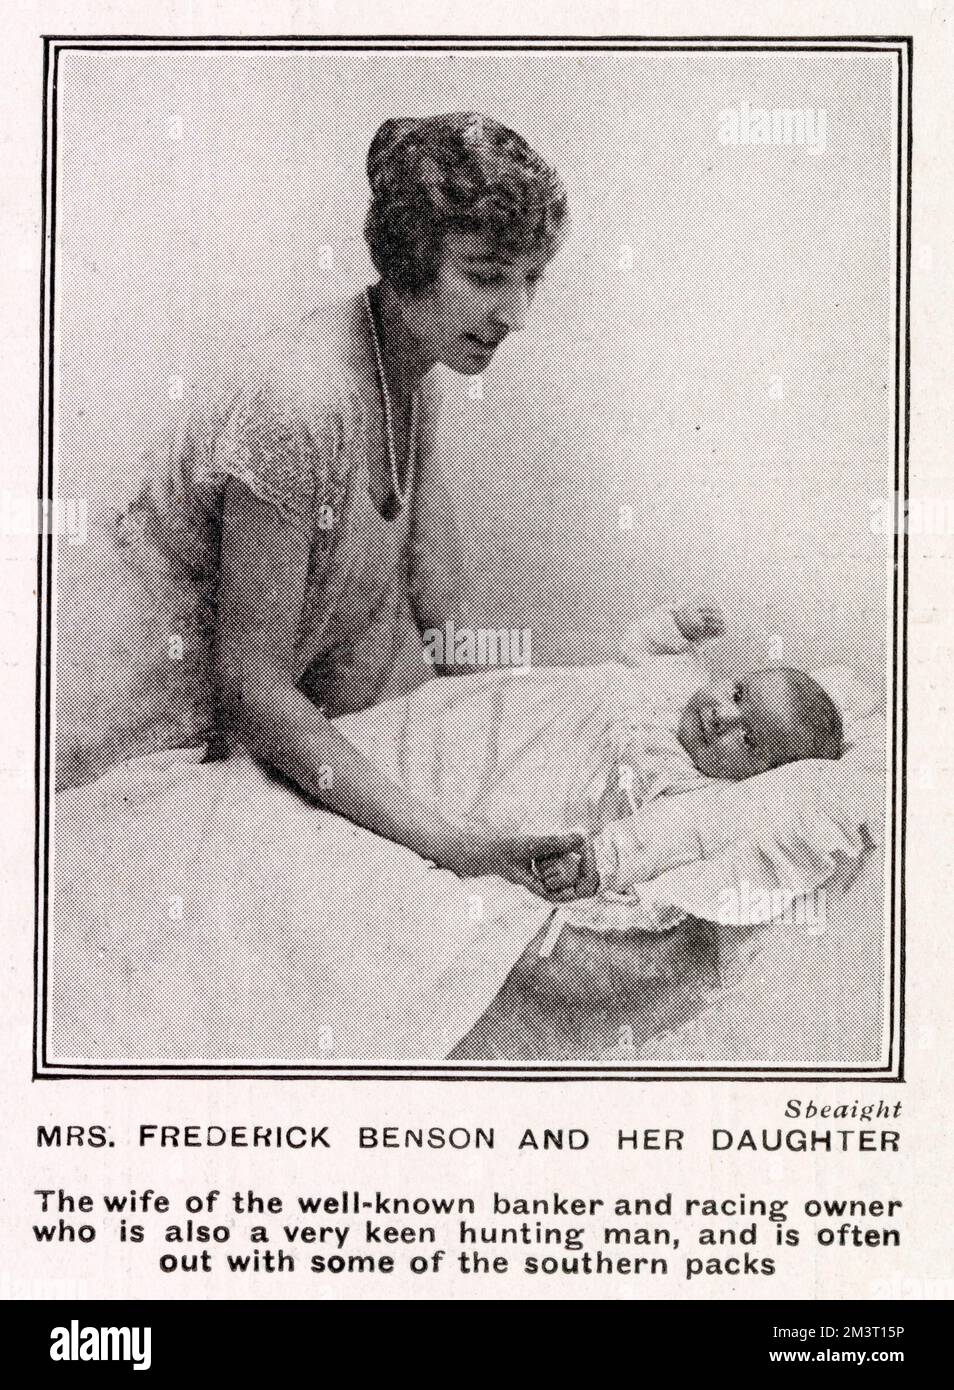 La señora Frederick Benson, esposa del famoso banquero y piloto de carreras, fotografiada por Speaight con su hija y presentada en The Tatler. Foto de stock